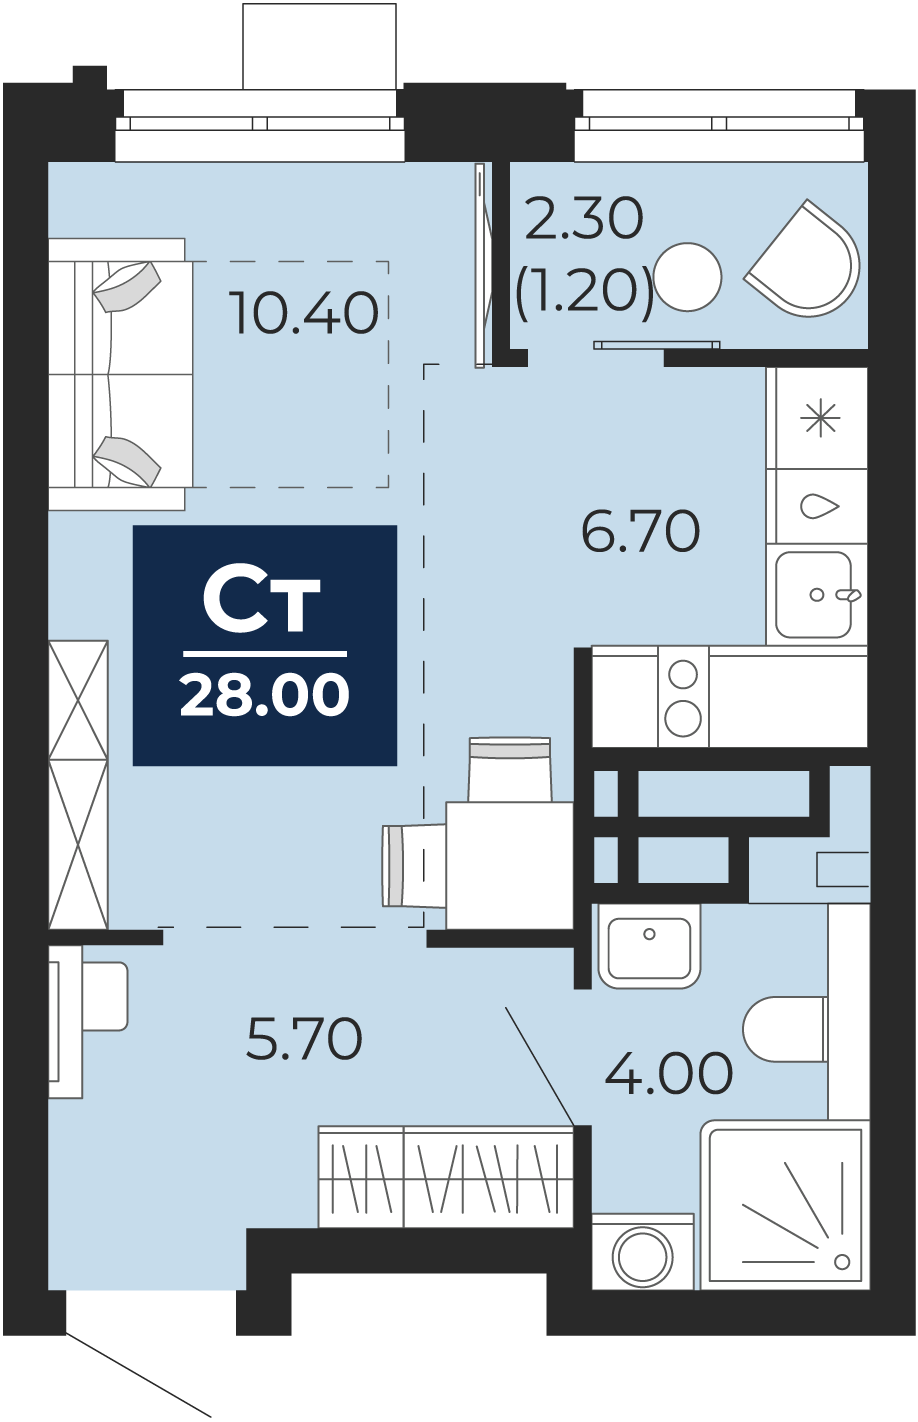 Квартира № 142, Студия, 28 кв. м, 8 этаж